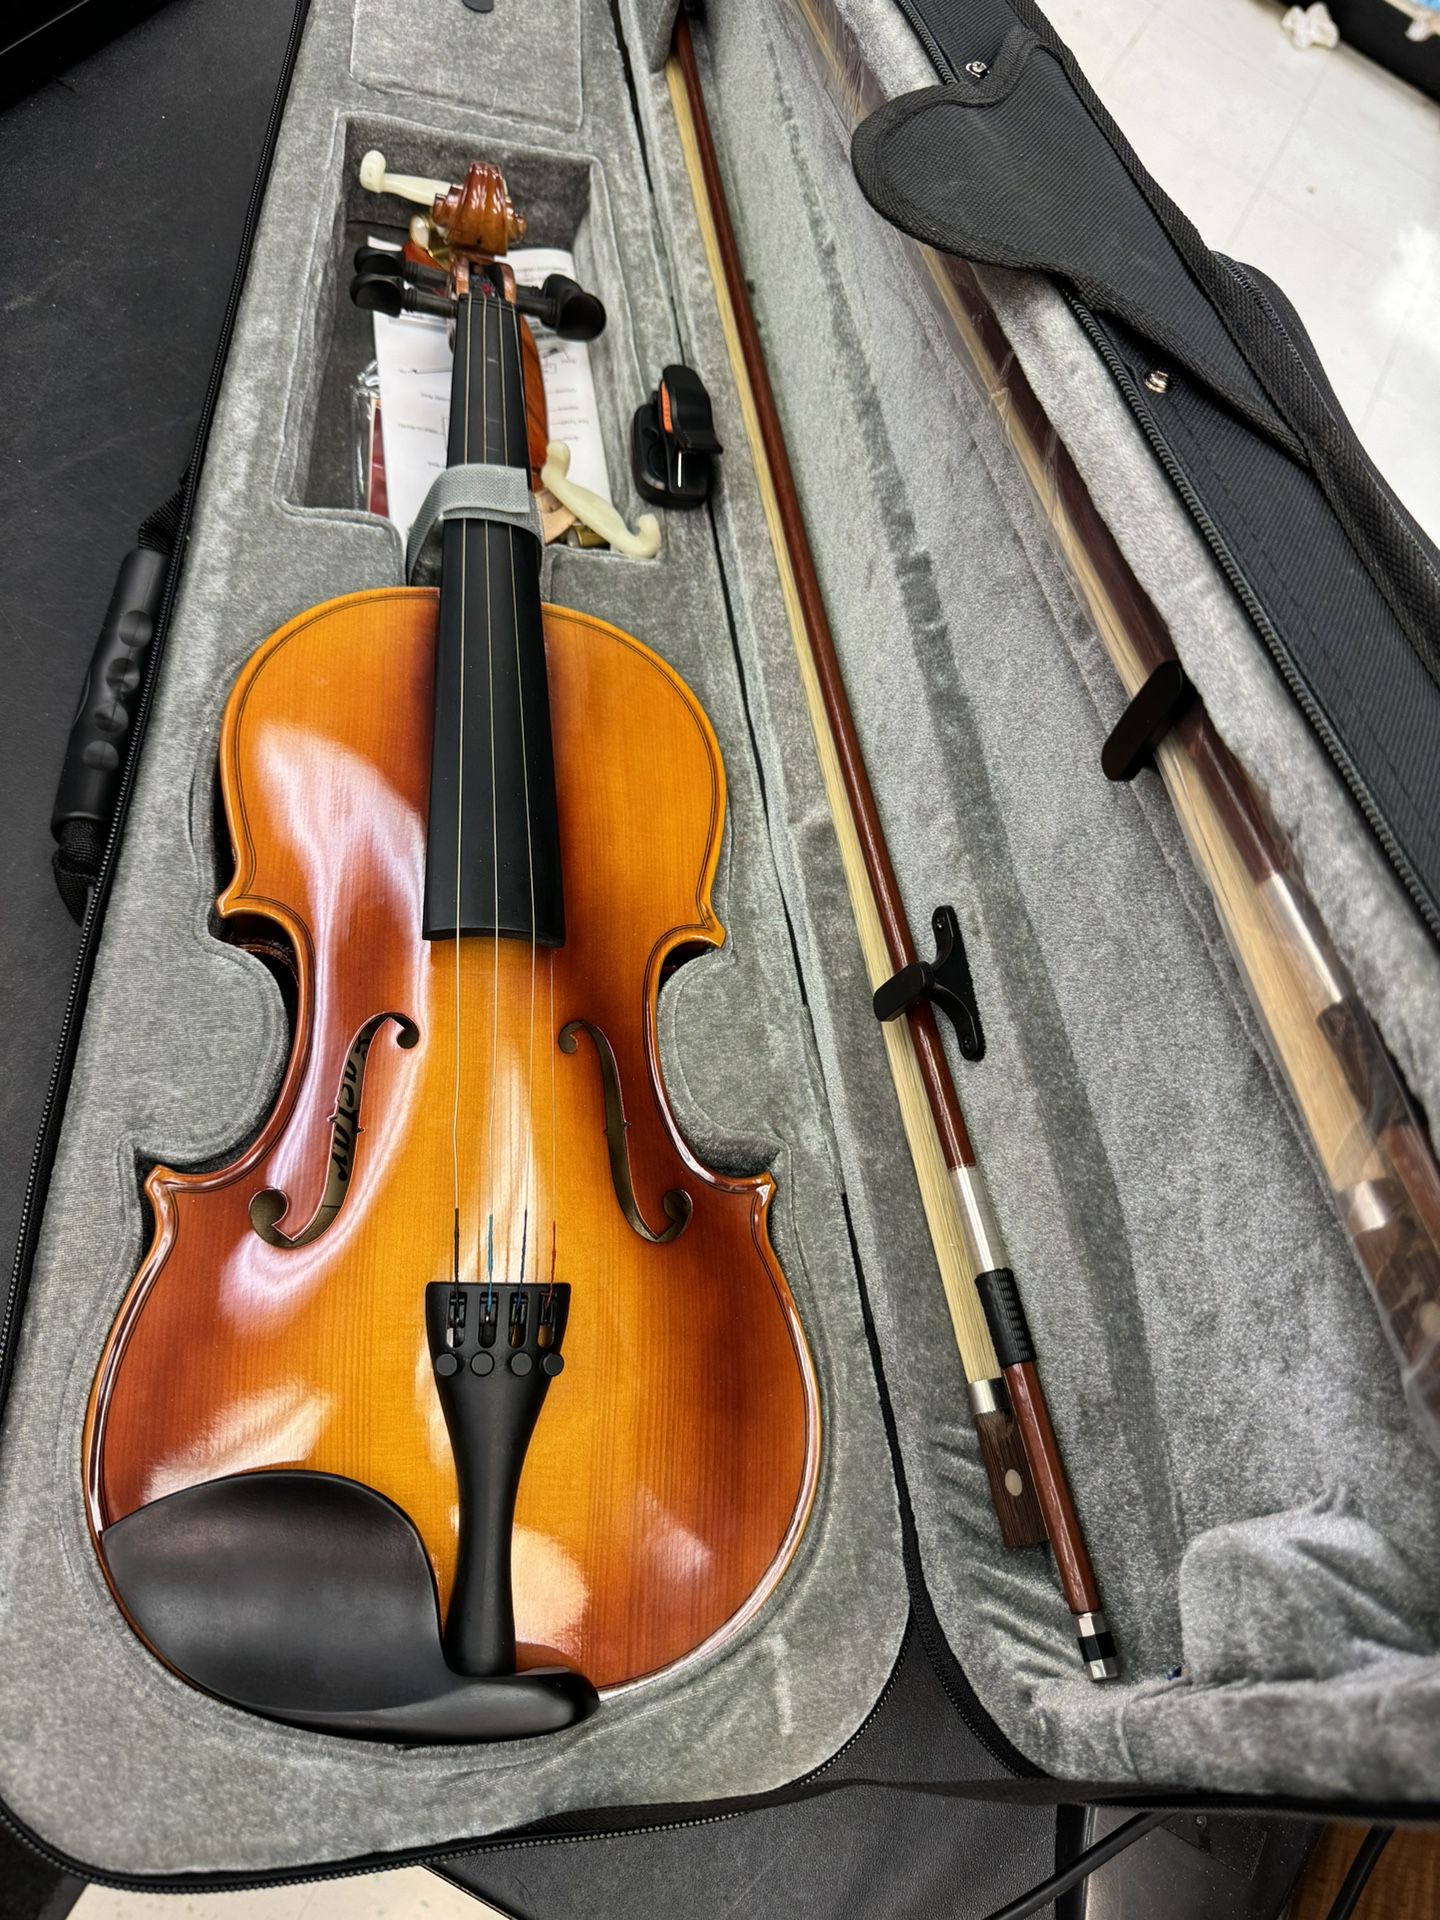 Eastar Violin